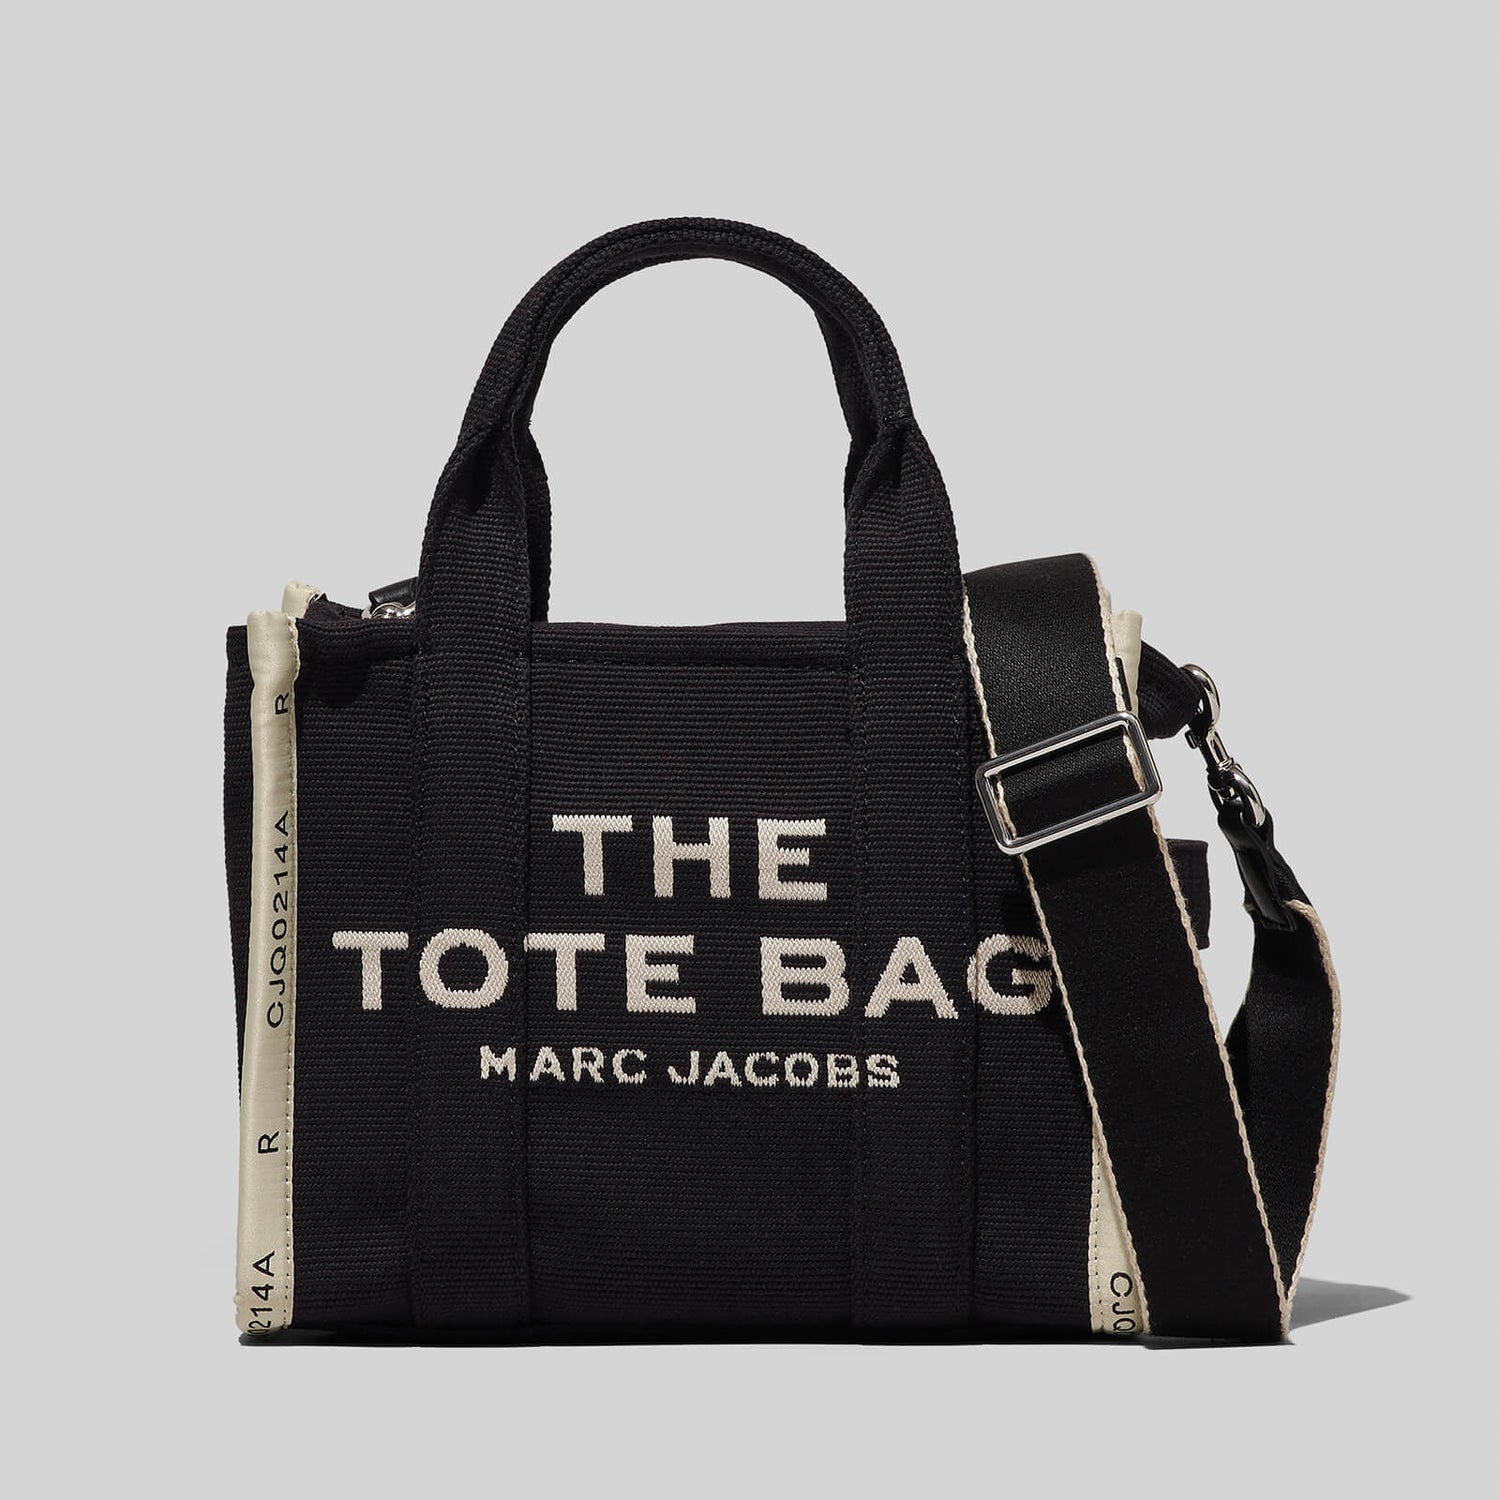 Marc Jacobs Women's Mini Jacquard Tote Bag - Black